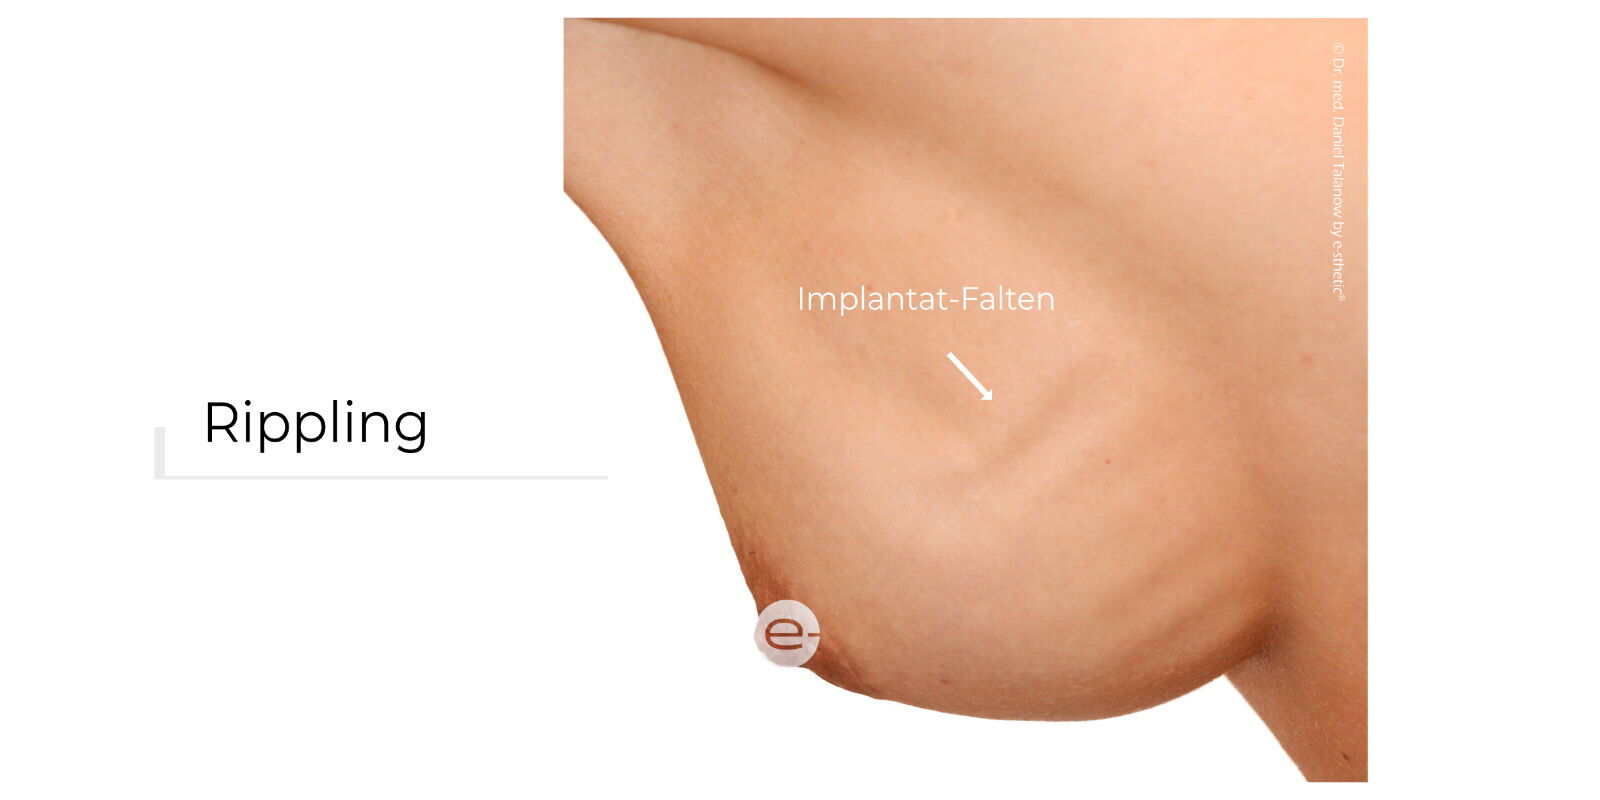 Rippling beschreibt die tastbare und teils sichtbare Faltenbildung eines Brustimplantates nach einer Brustvergrößerung